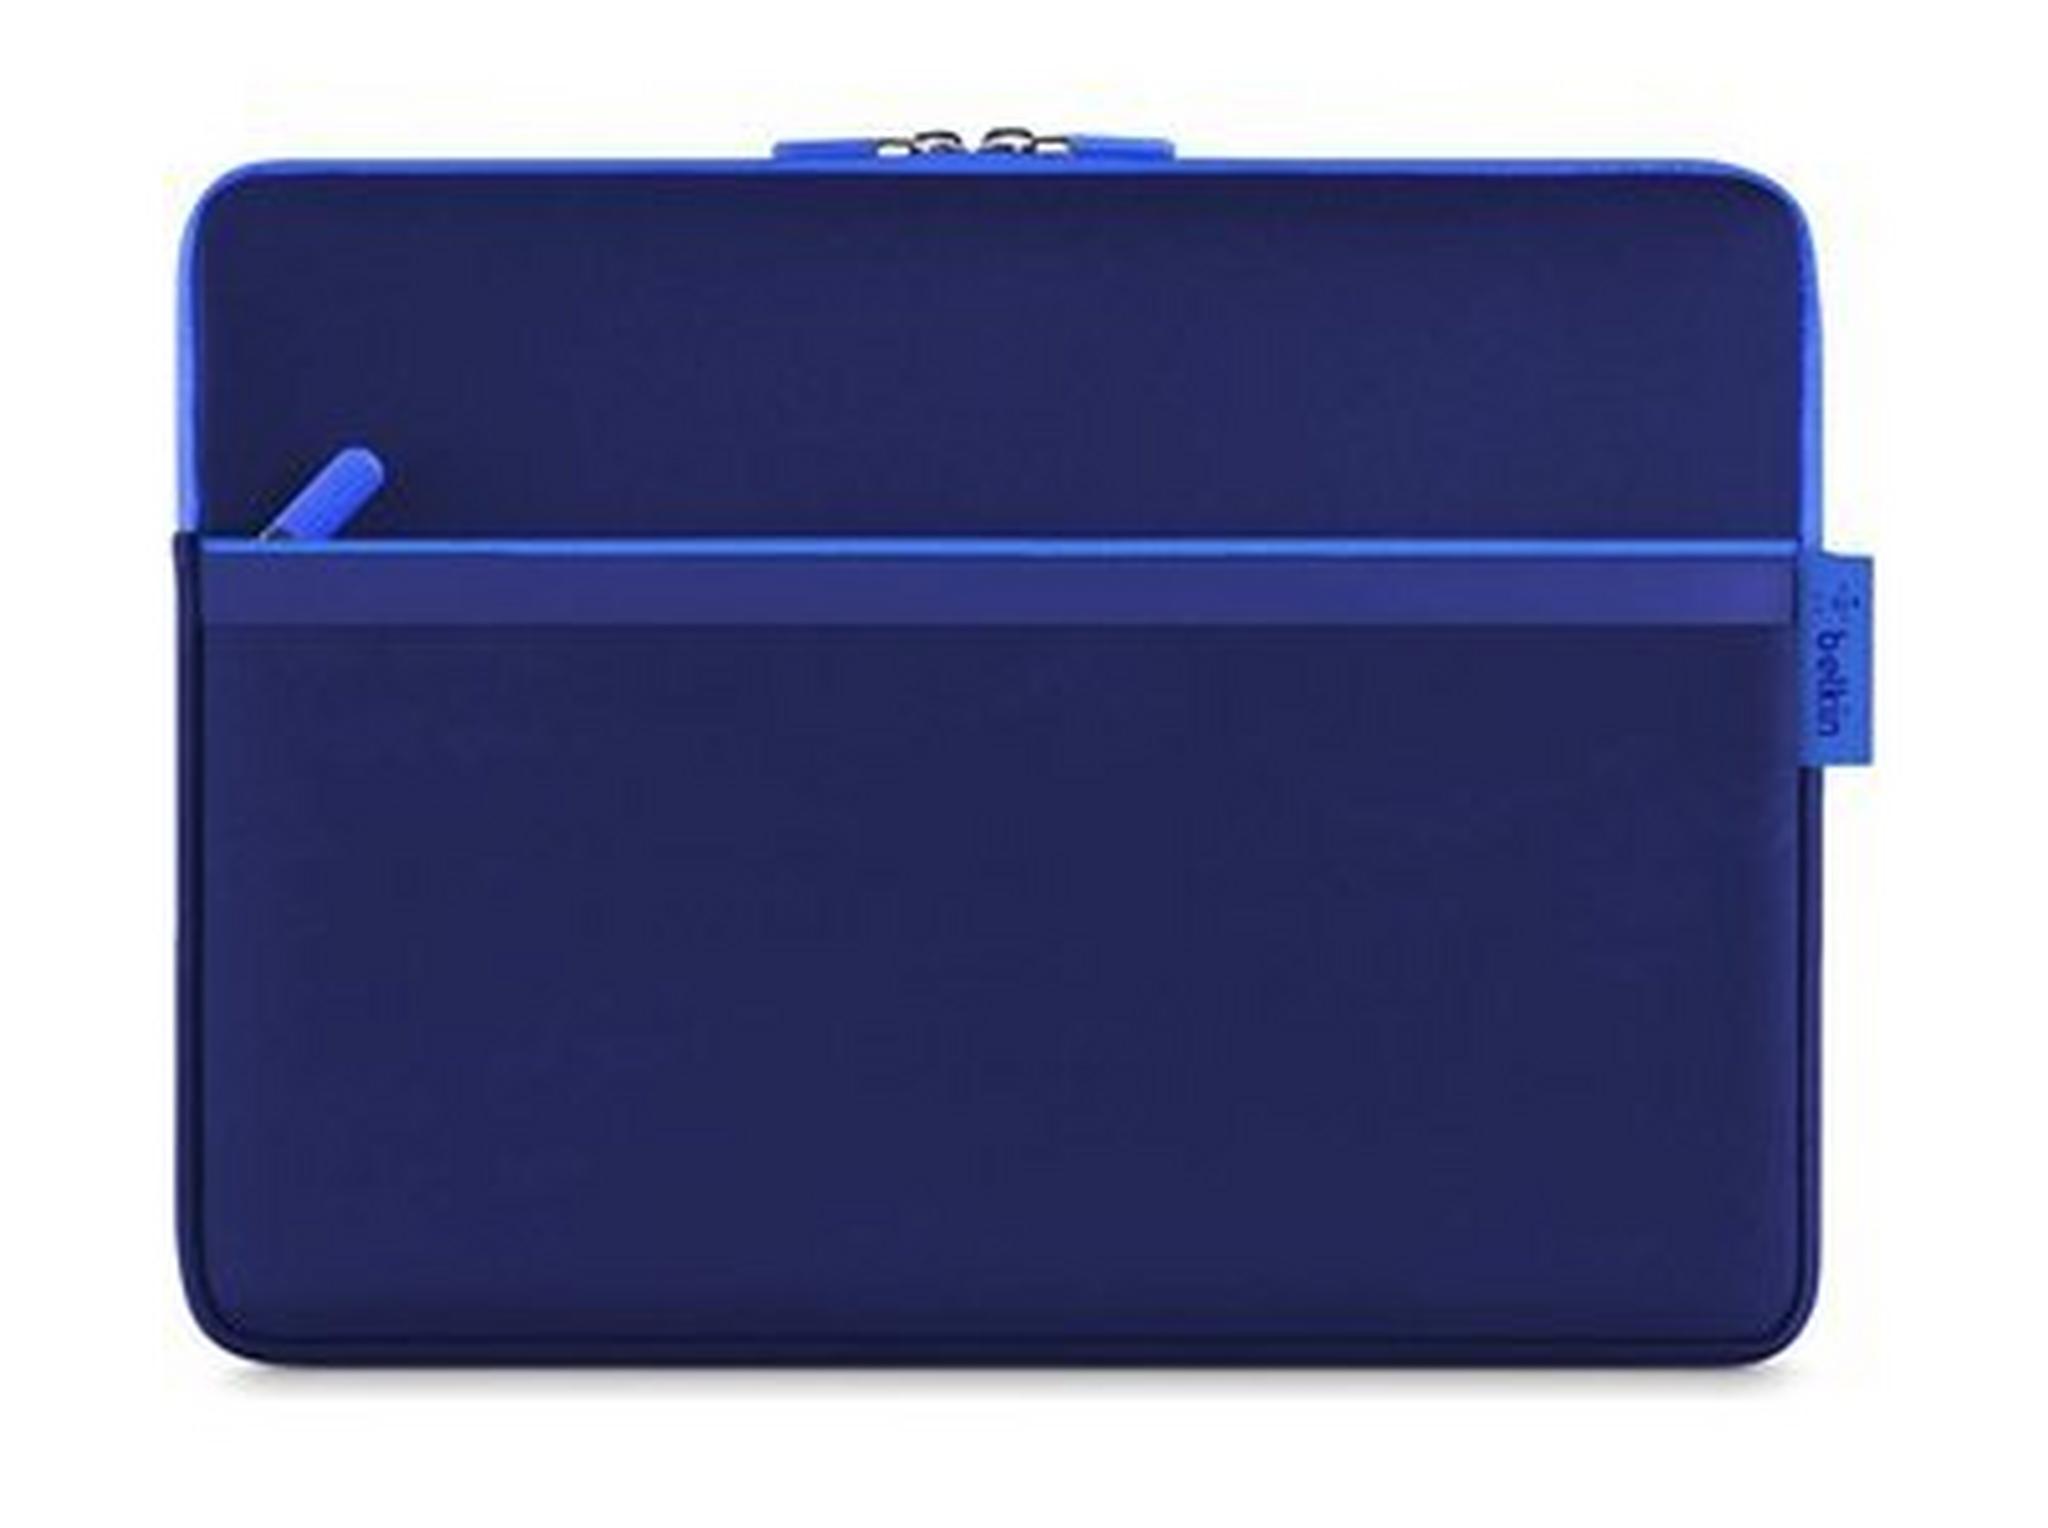 حقيبة مع جيب لمايكروسوفت سيرفس برو بحجم ١٢ بوصة من بلكين – أزرق (F7P352BTC01)